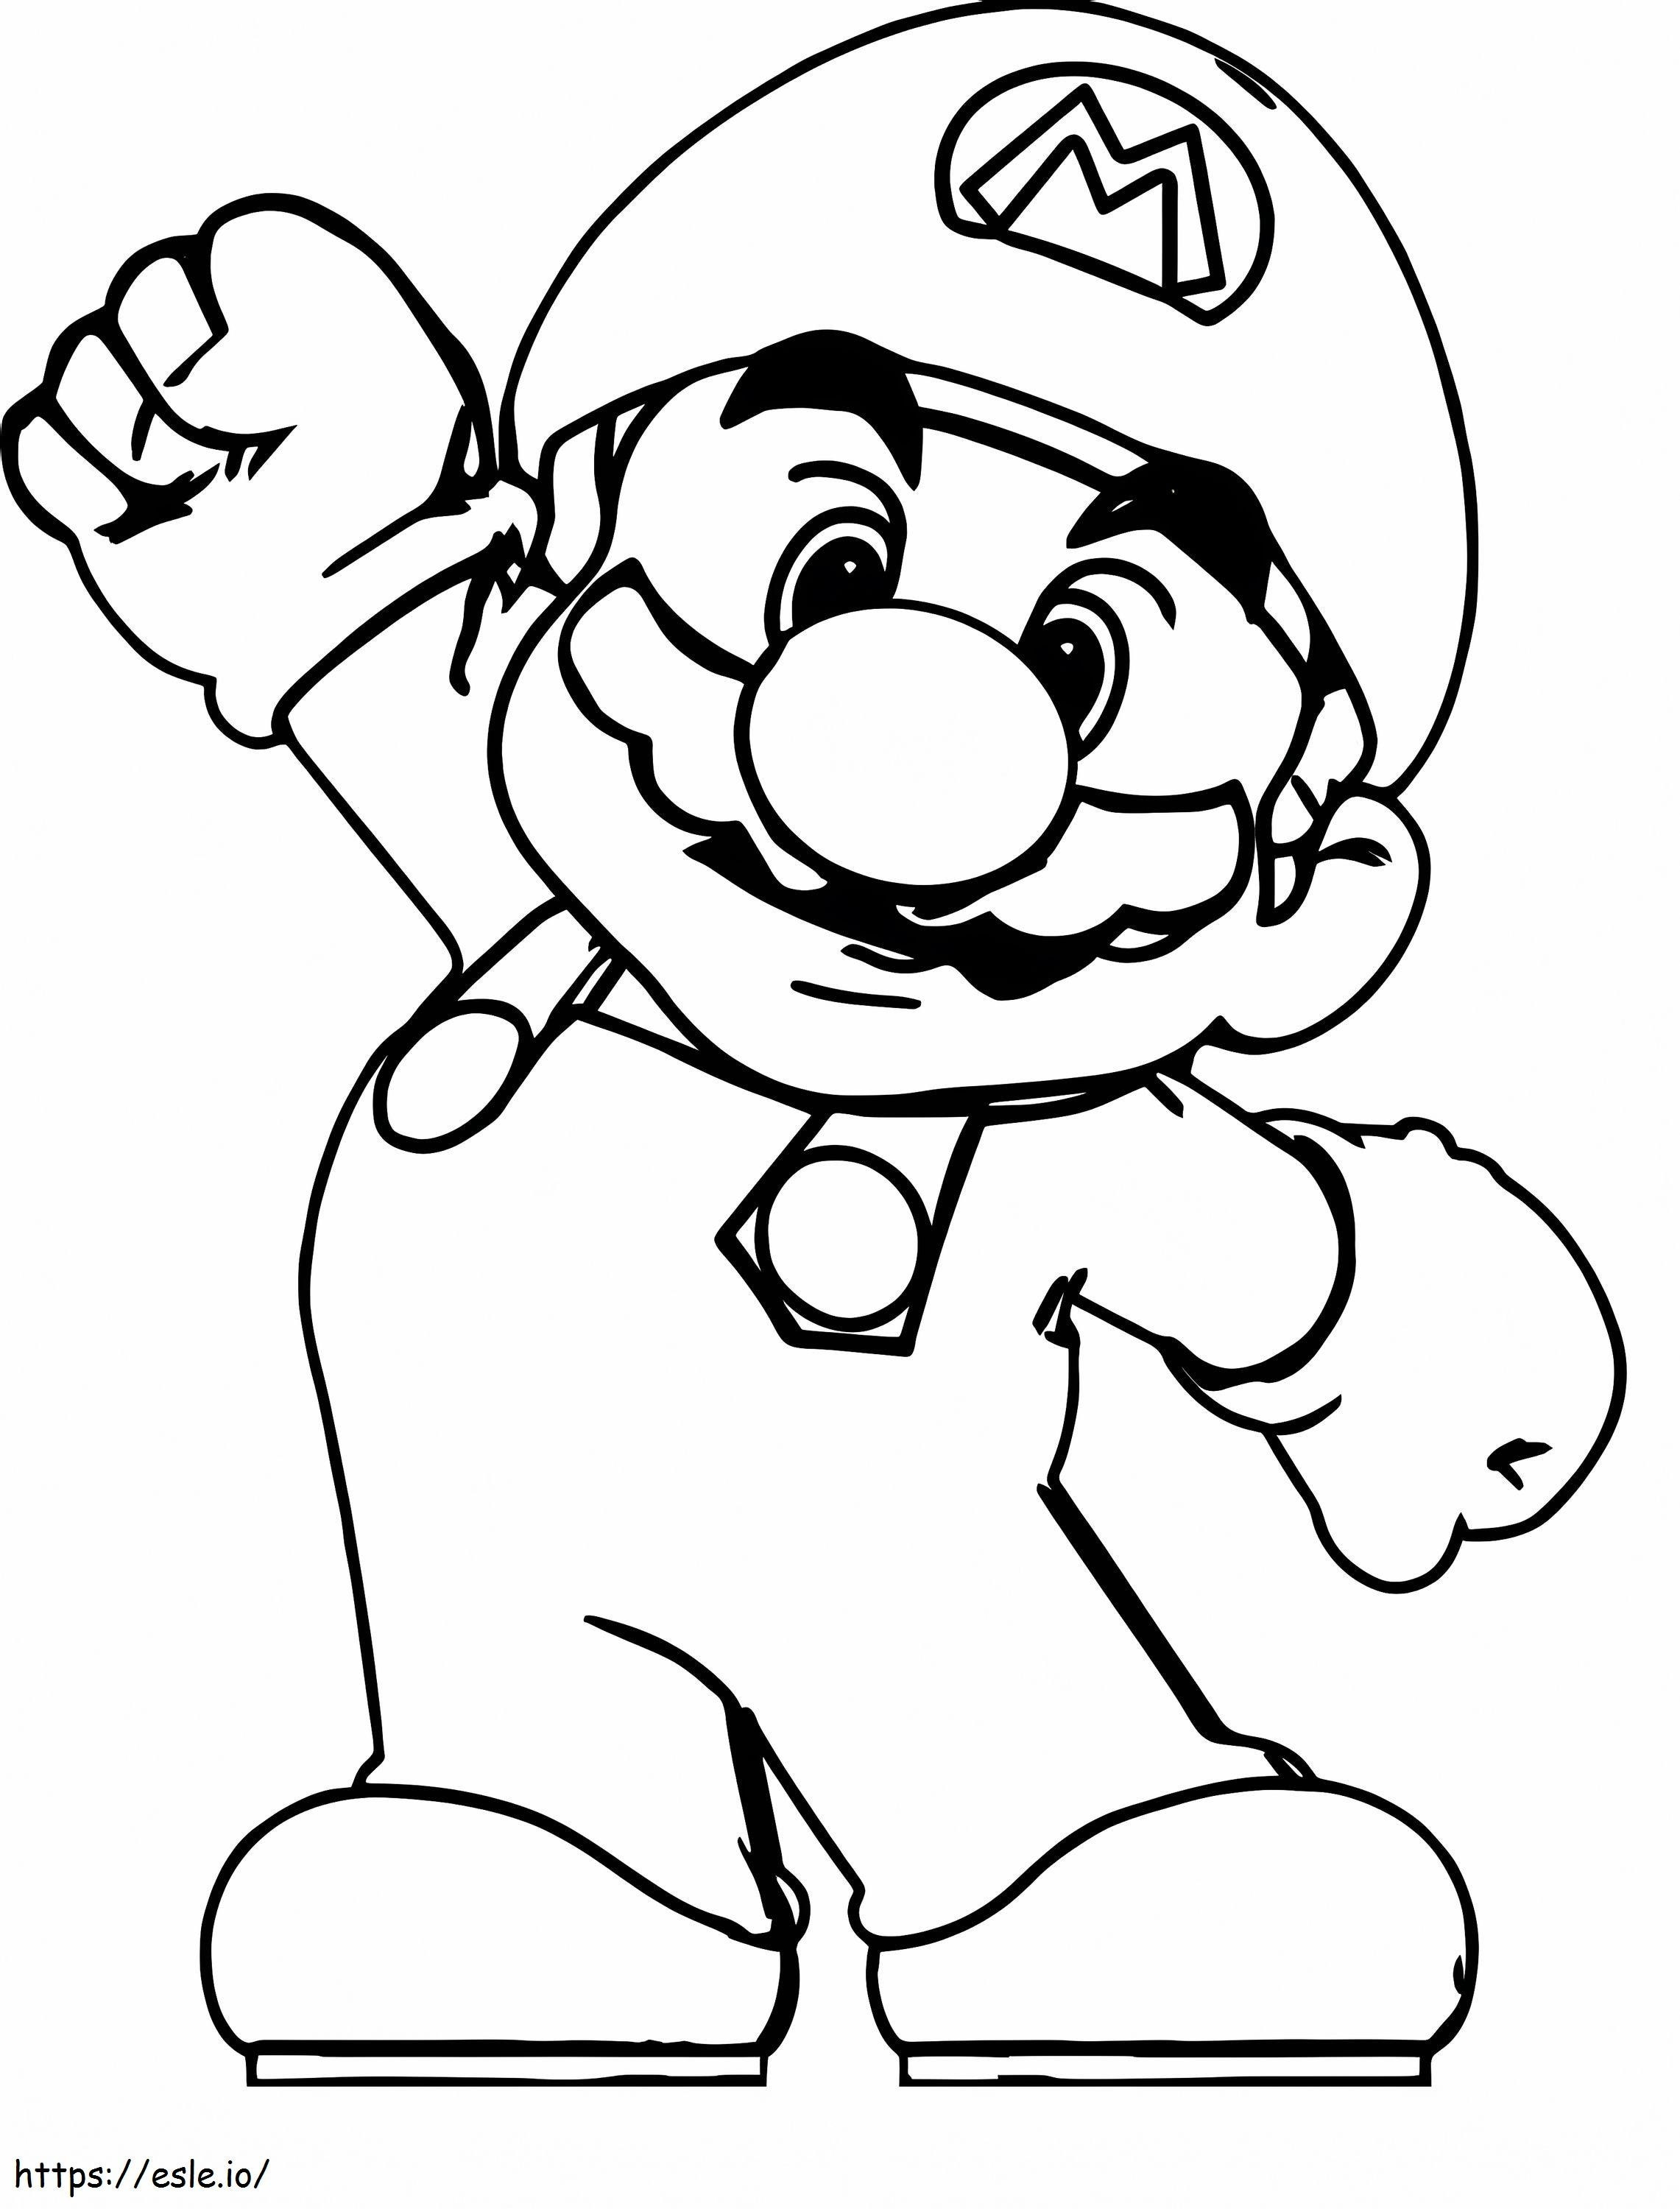 Mario 779X1024 coloring page